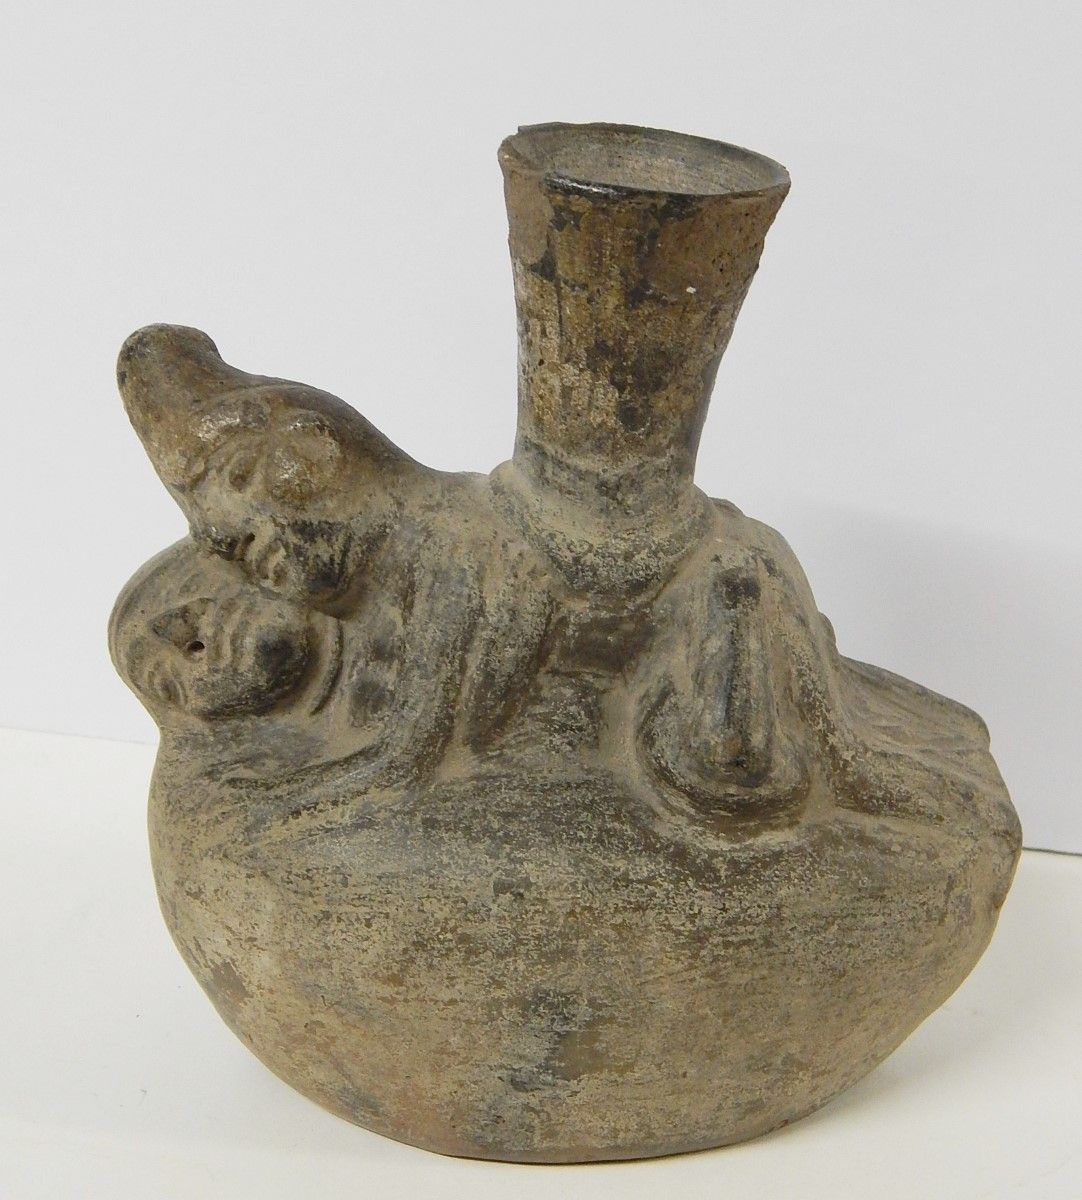 Null Vaso para beber,Terracota,Altura aprox. 17cm,Perú,Siglo XIX/XX